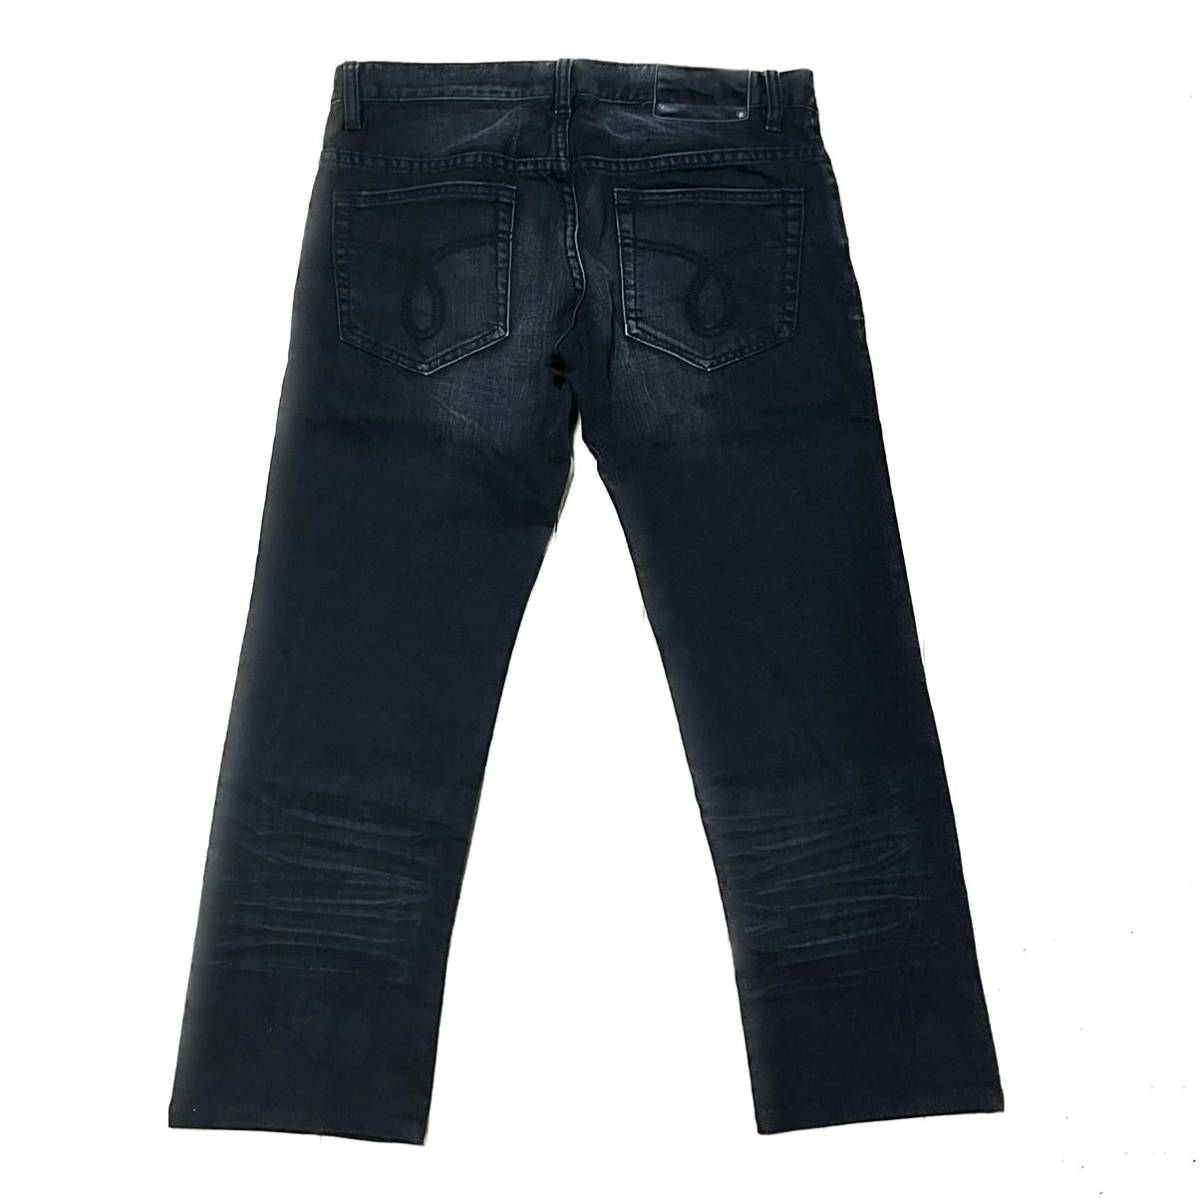 Calvin Klein カルバンクライン デニム パンツ ブラック系サイズ L